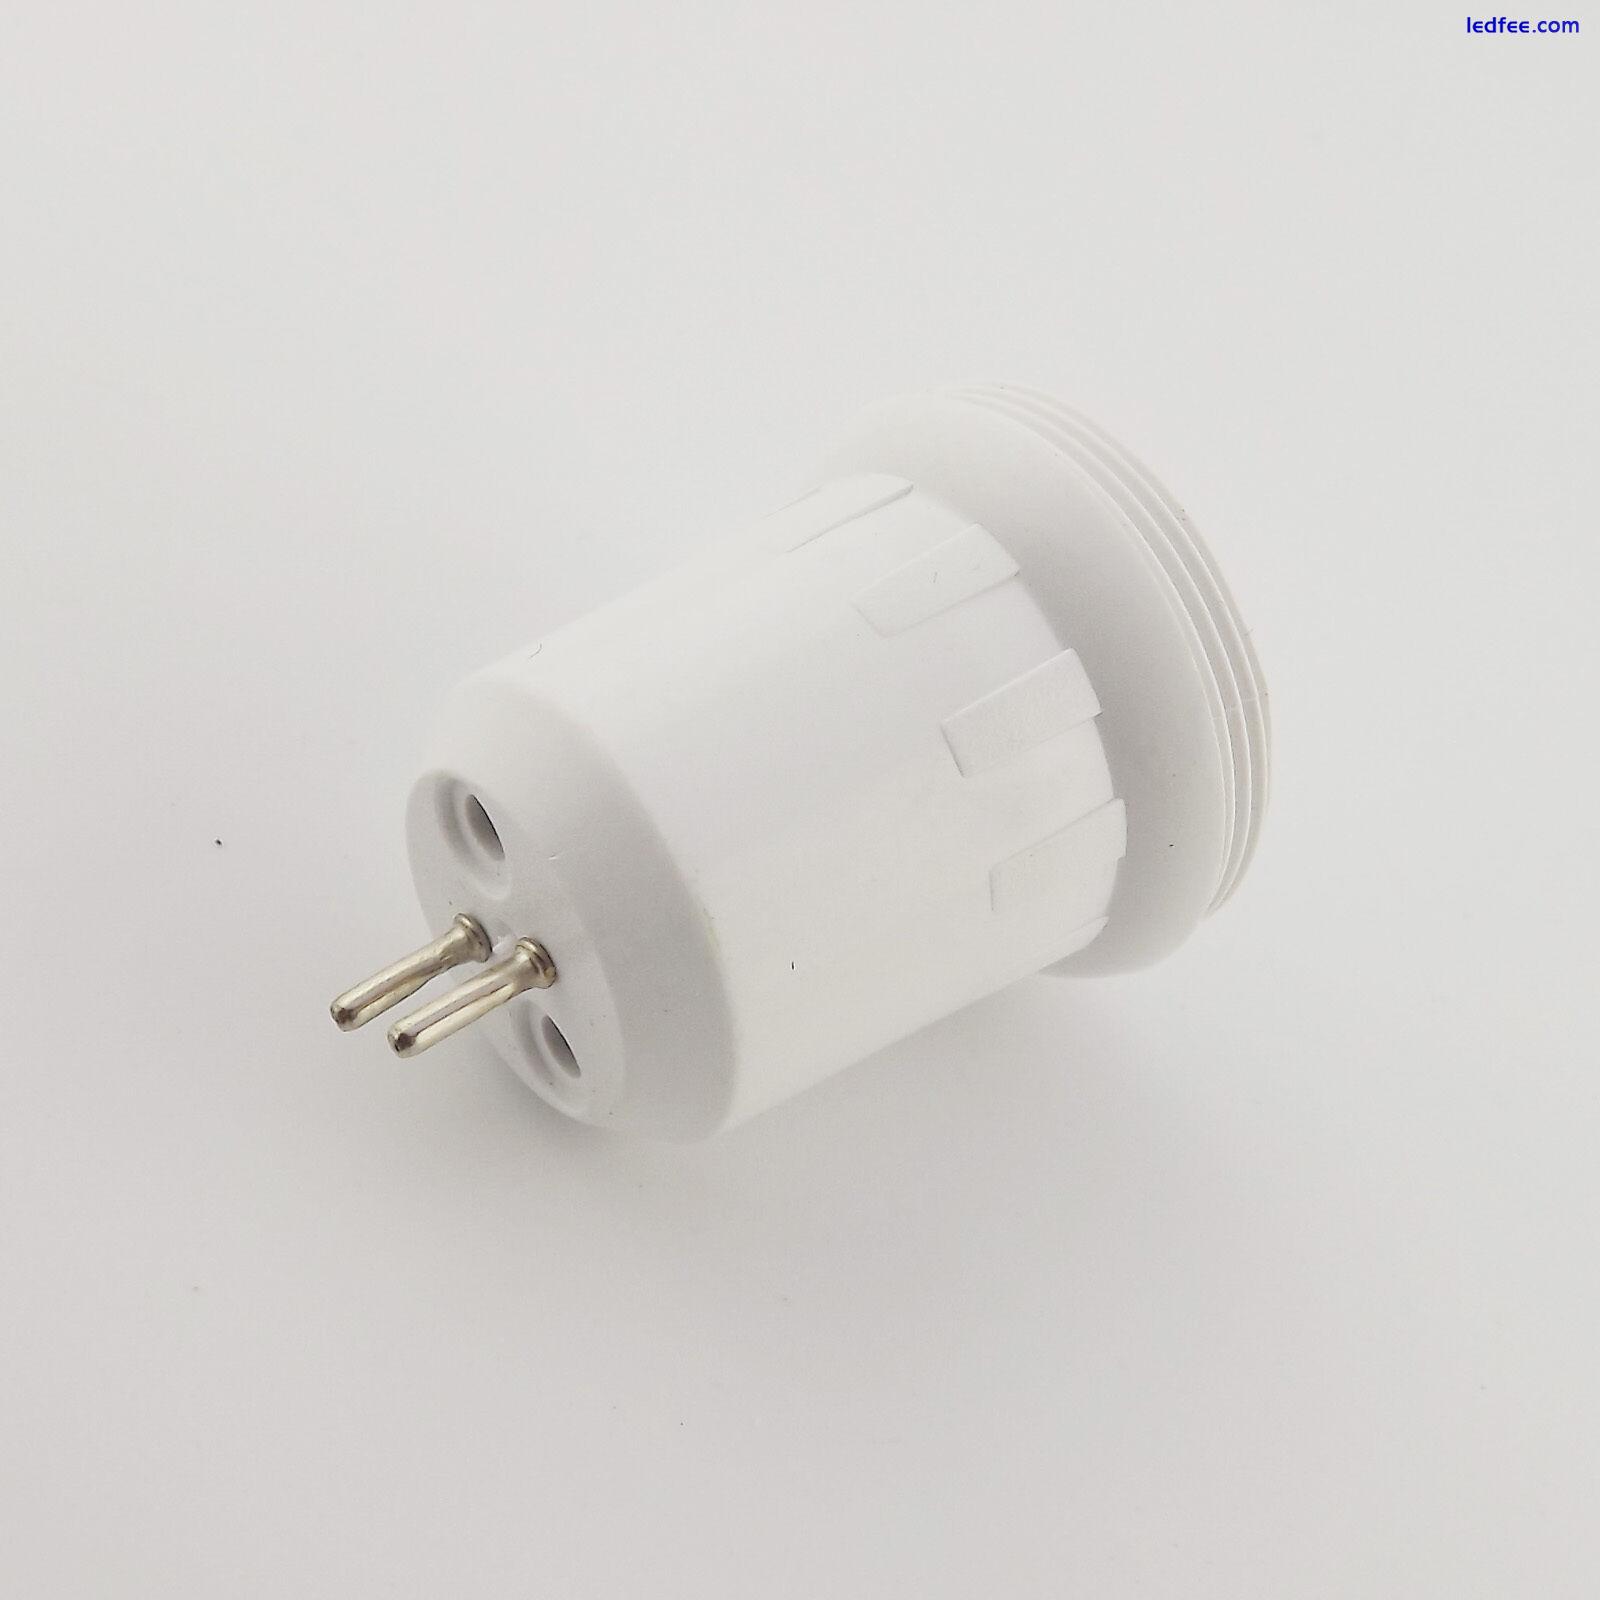 MR16 to E10 Screw Thread LED Halogen CFL Light Bulb Lamp Socket Convert Holder 2 